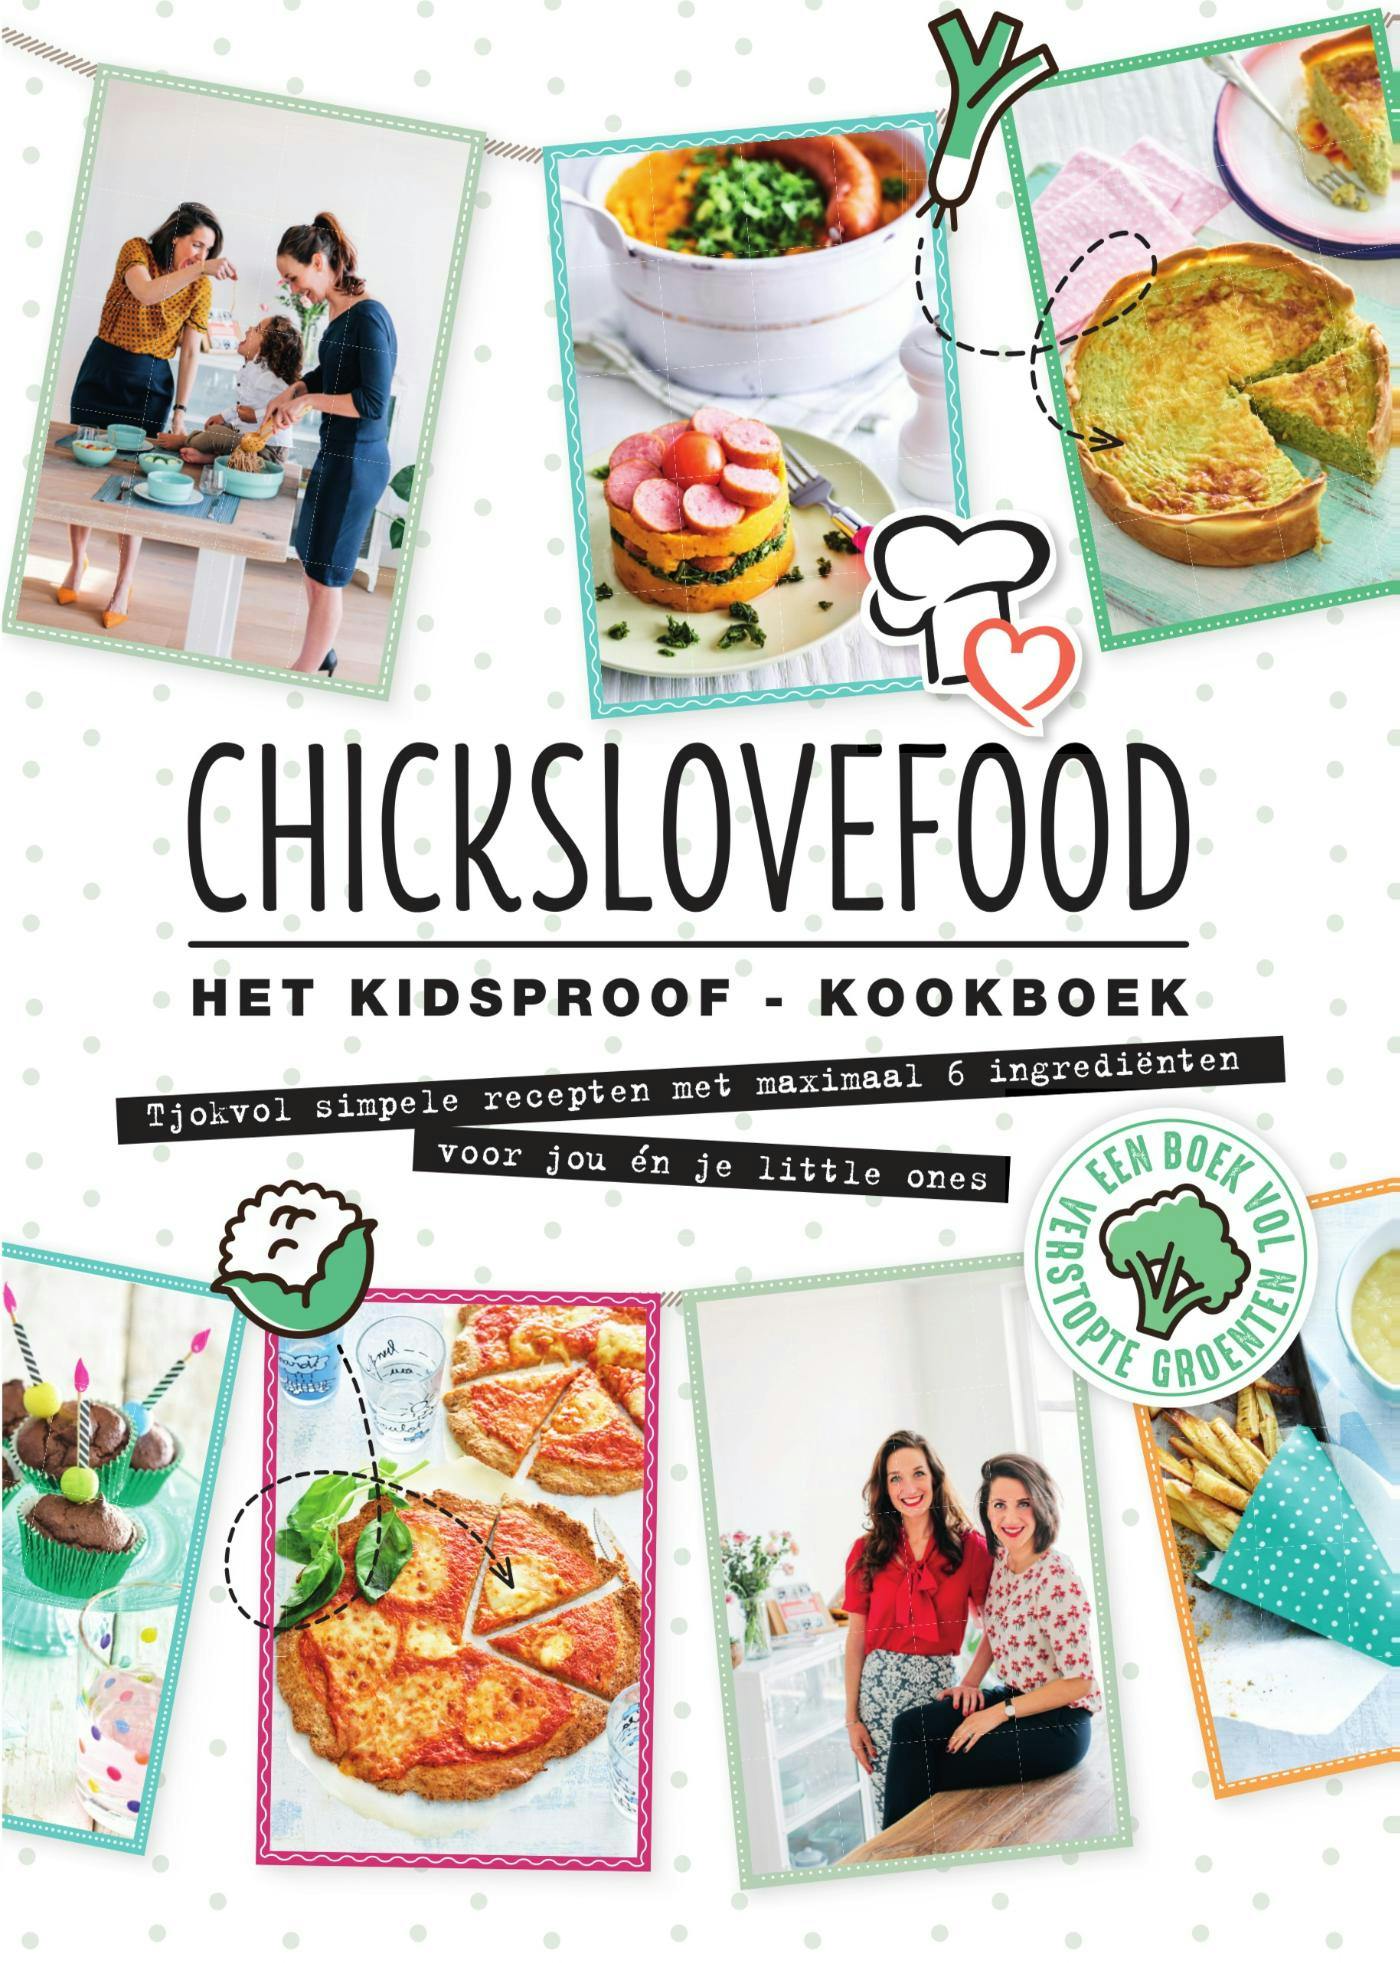 Chickslovefood Het kidsproof-kookboek: Tjokvol simpele recepten met maximaal 6 ingrediënten voor jou én je little ones - undefined